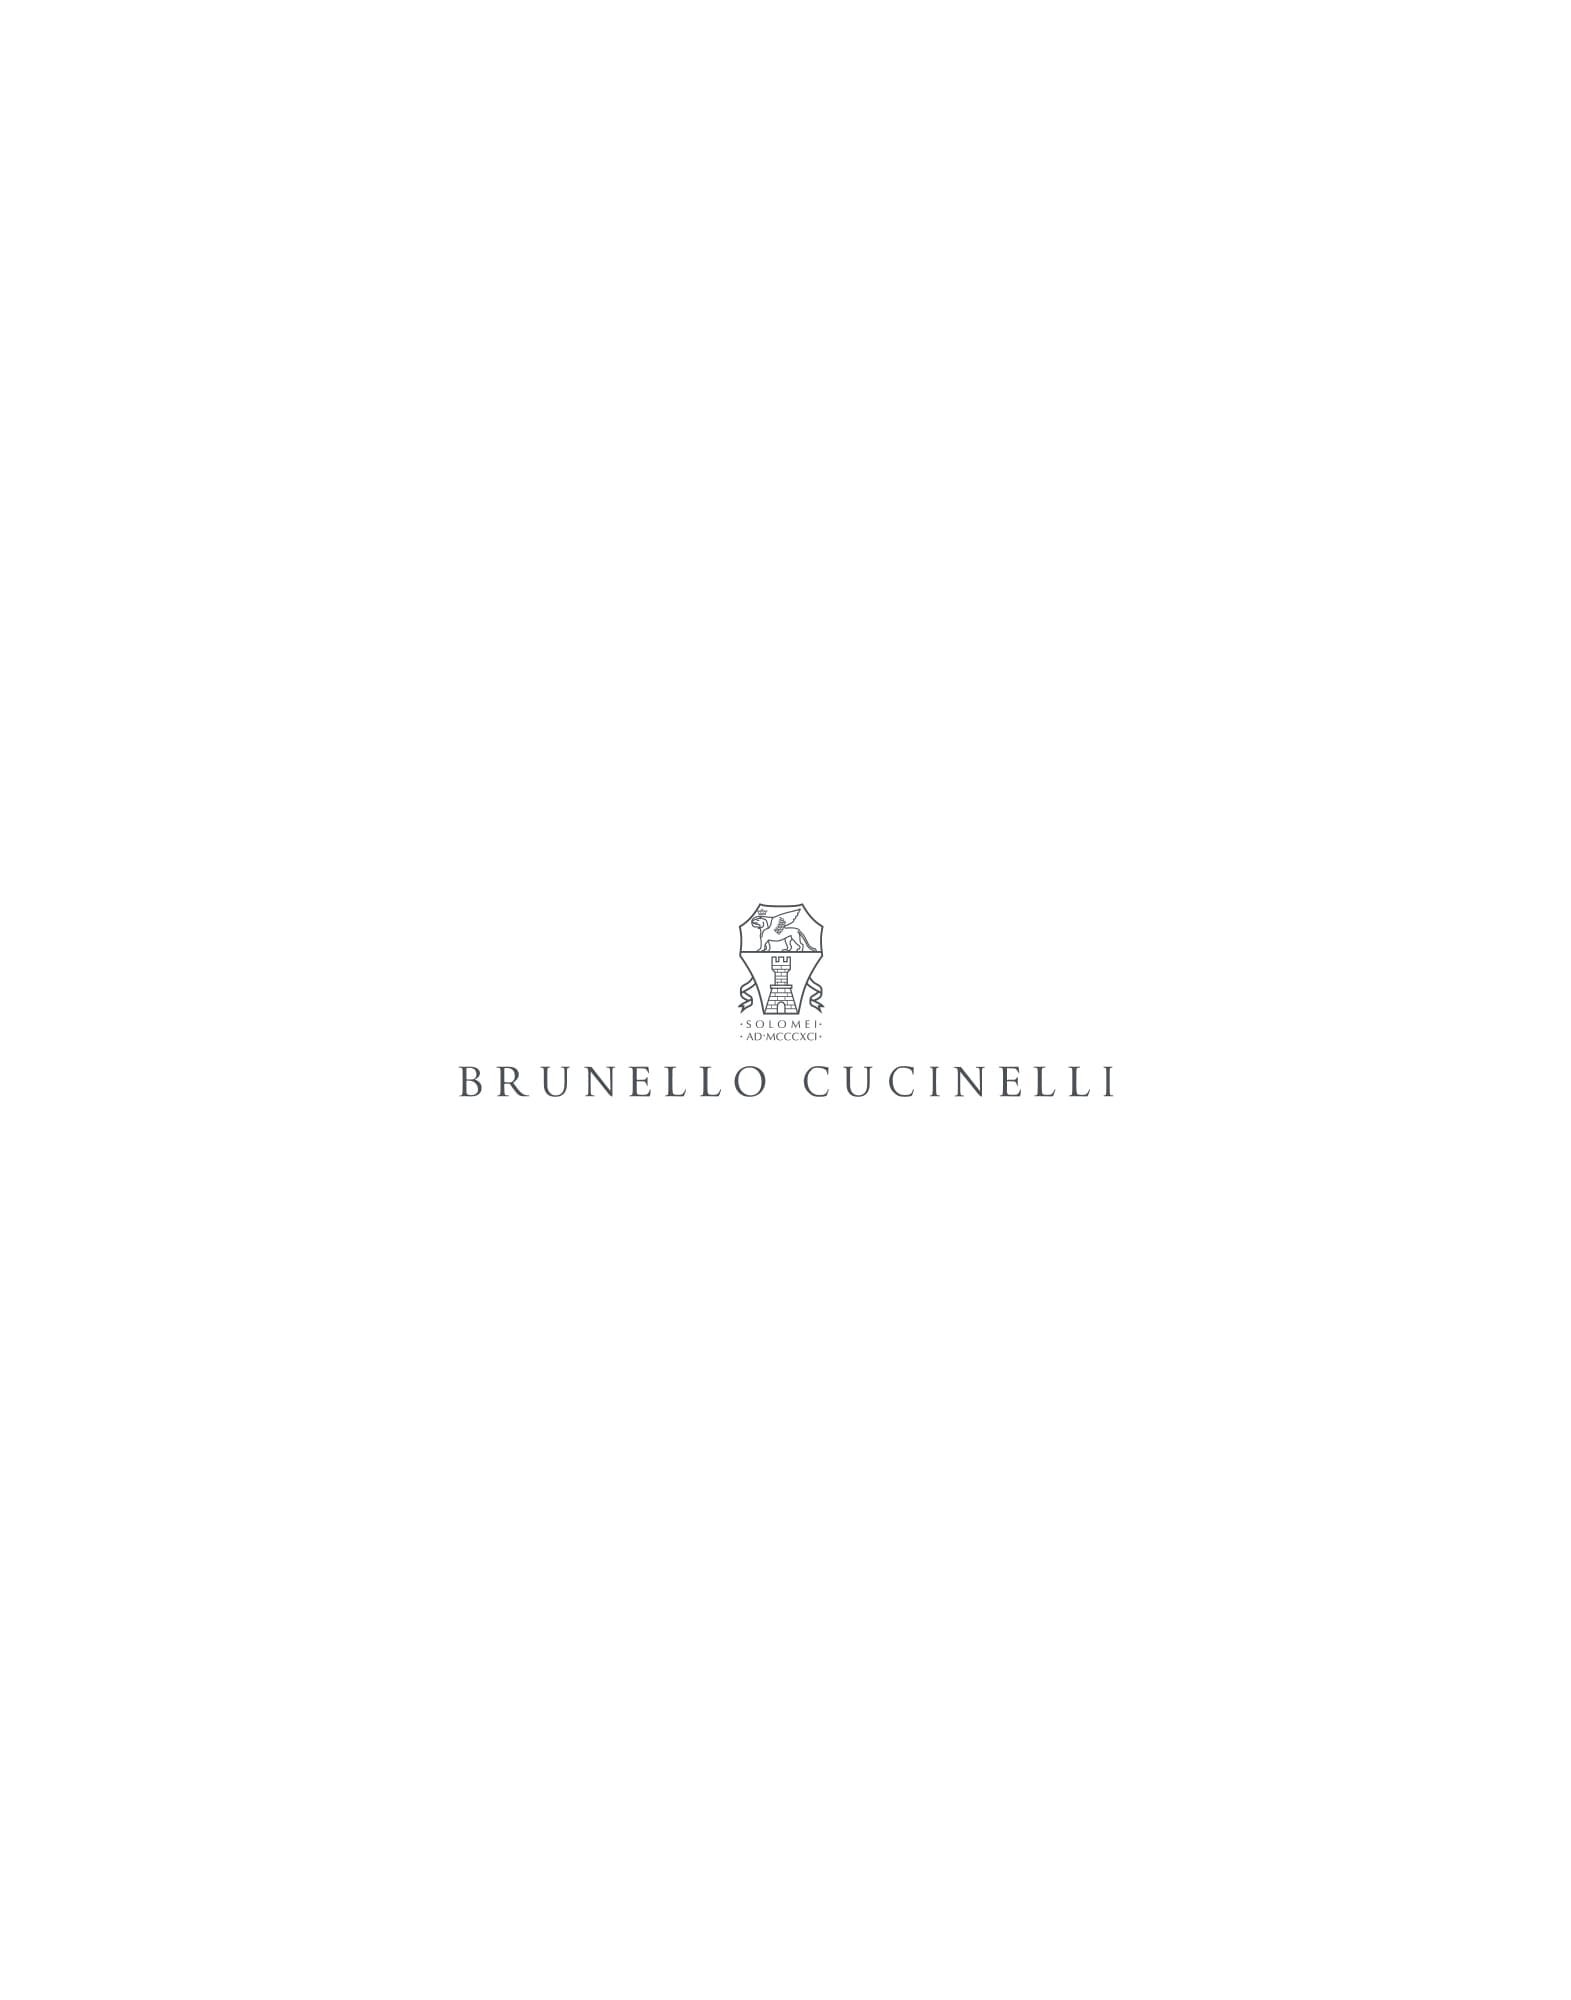 Zapatillas slip-on de piel de ante Marrón Hombre - Brunello Cucinelli